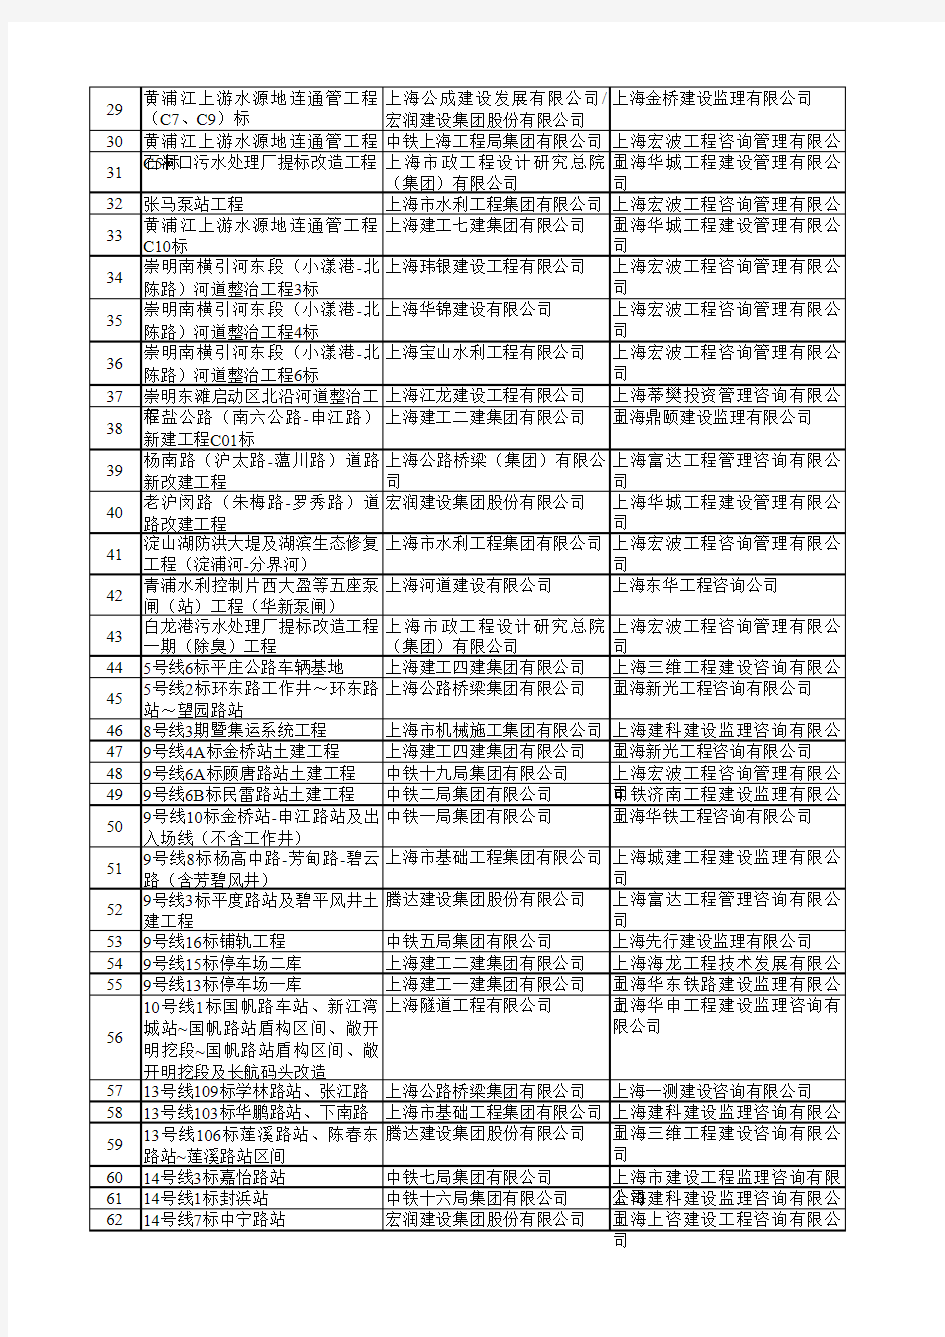 文明工地-6年度上海市文明工地公示名单